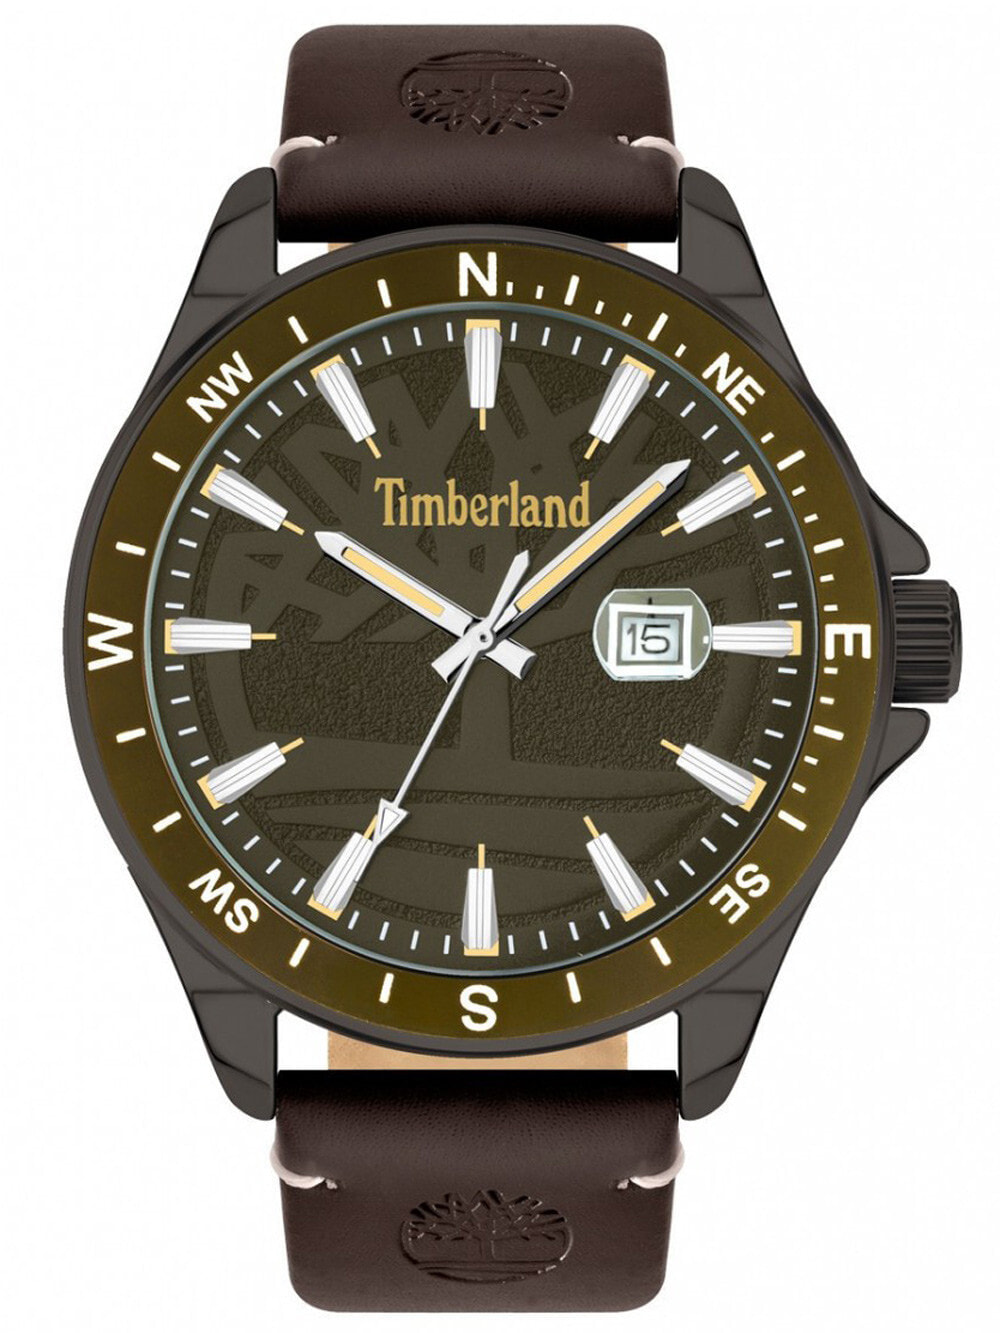 Мужские наручные часы с коричневым кожаным ремешком Timberland TBL15941JYUK.53 Swampscott 46mm 5ATM